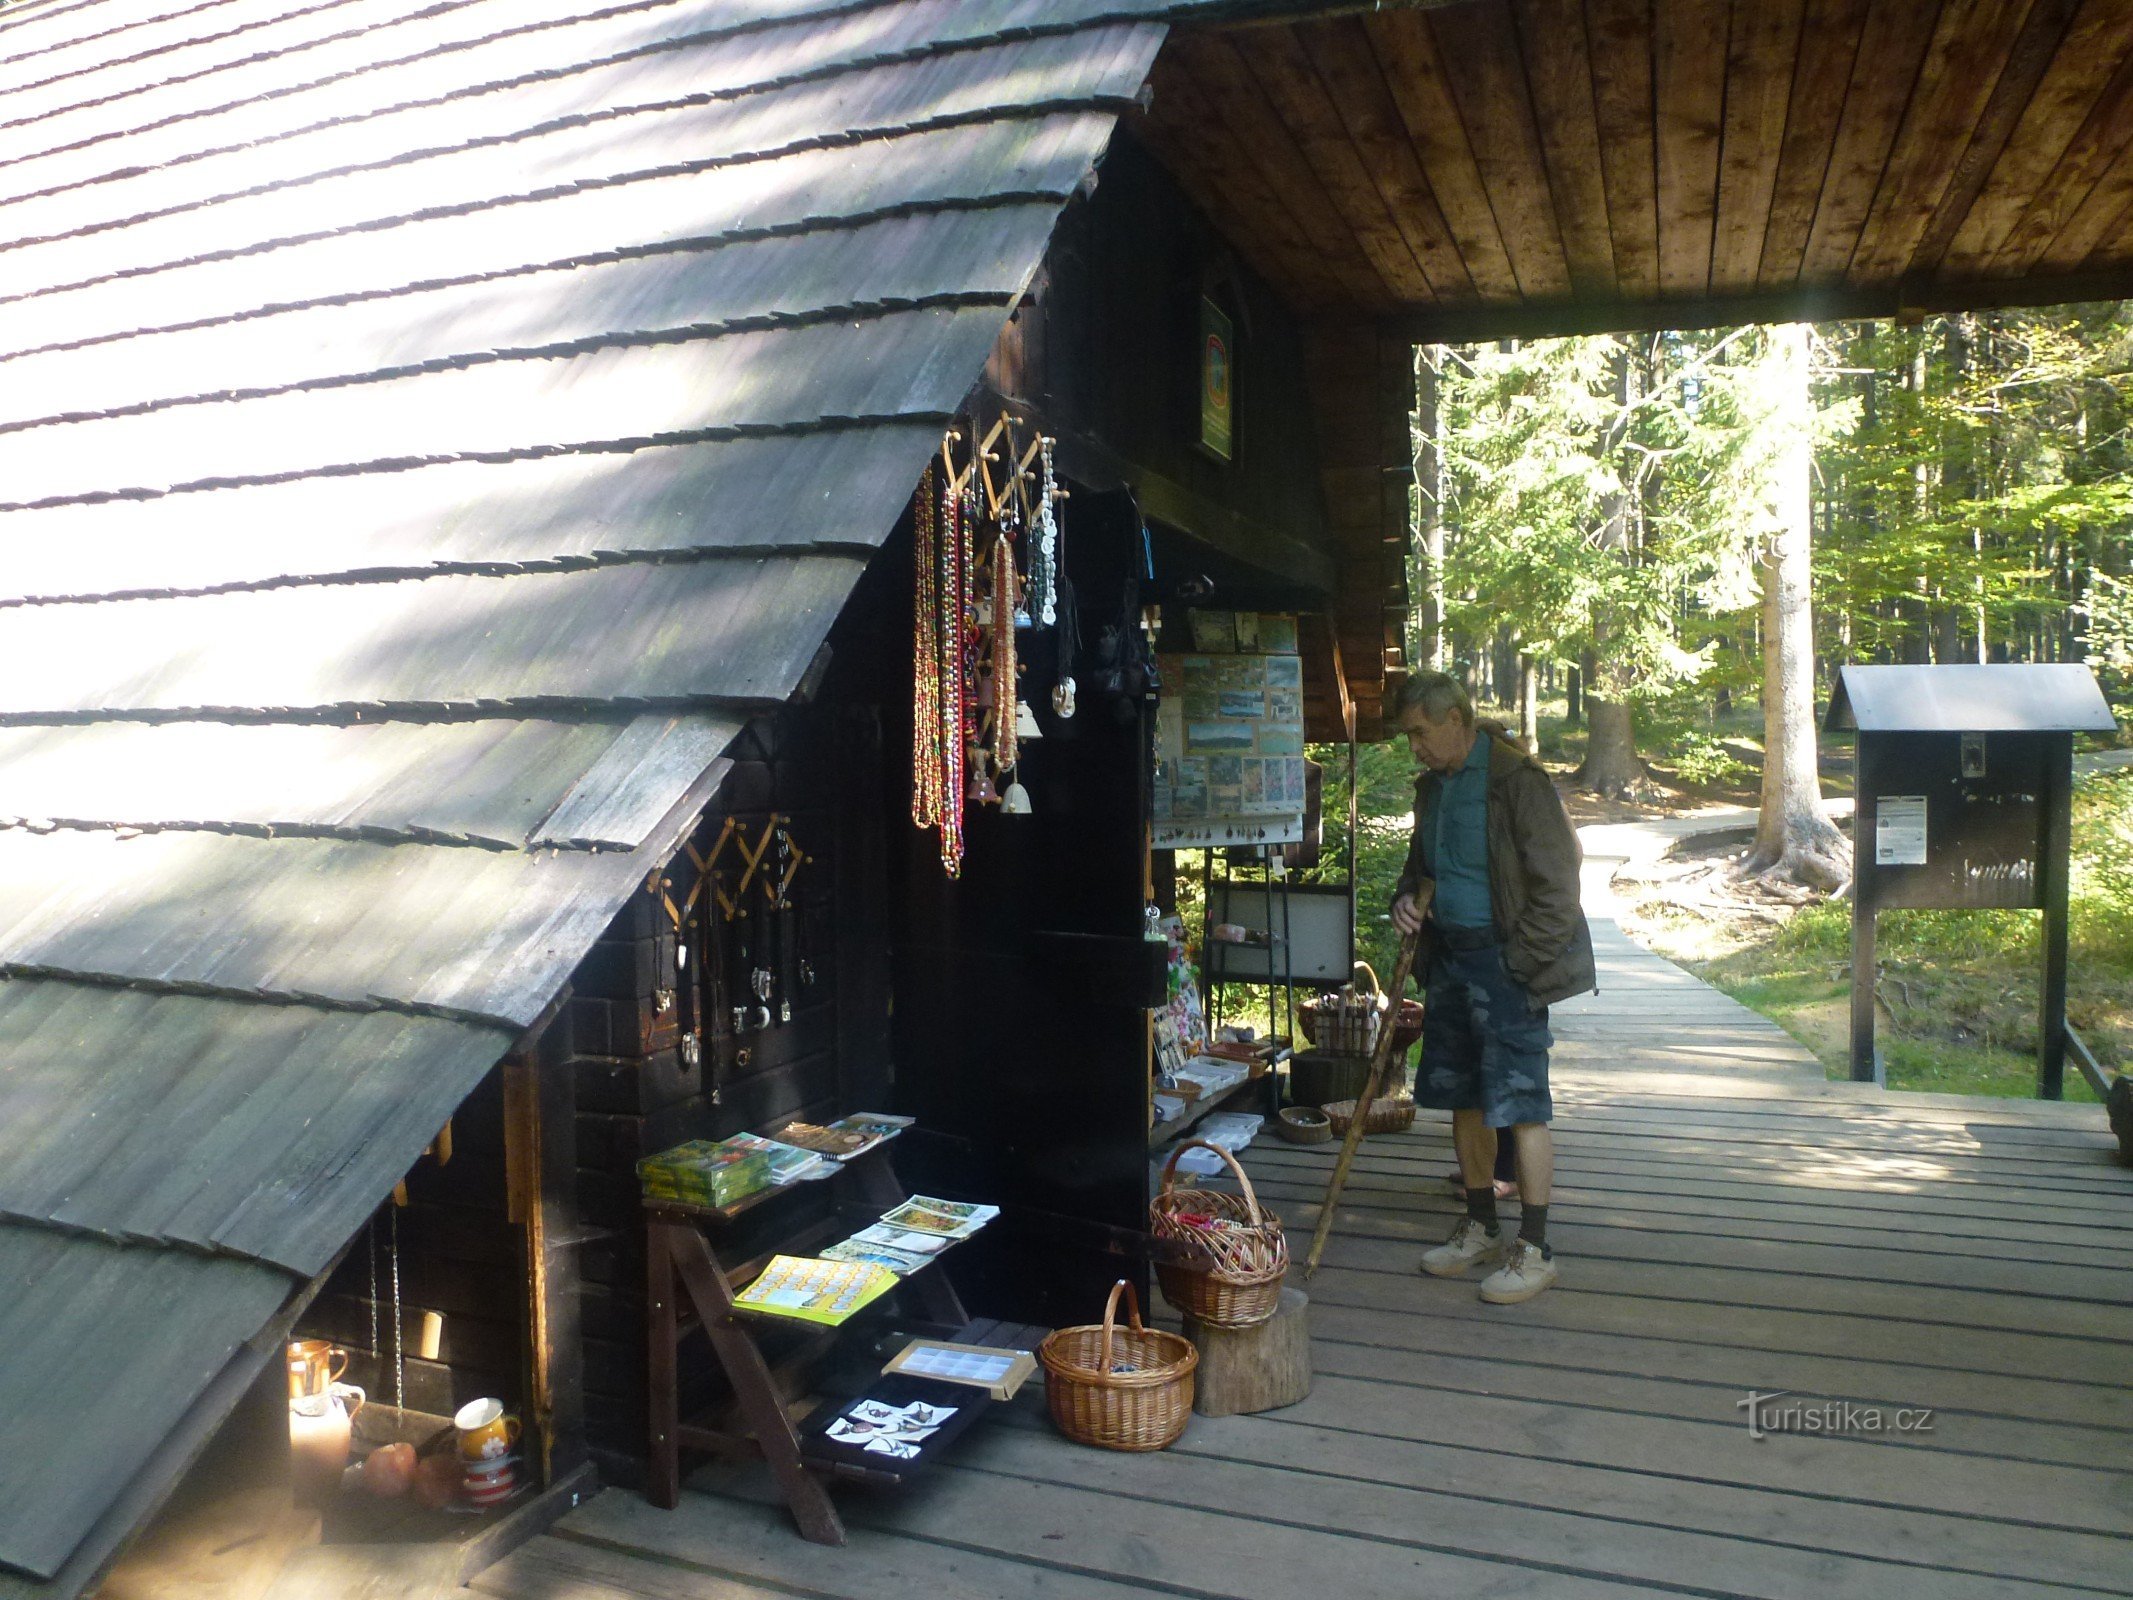 Uma cabana de madeira onde os turistas podem comprar vários souvenirs, além de ingressos